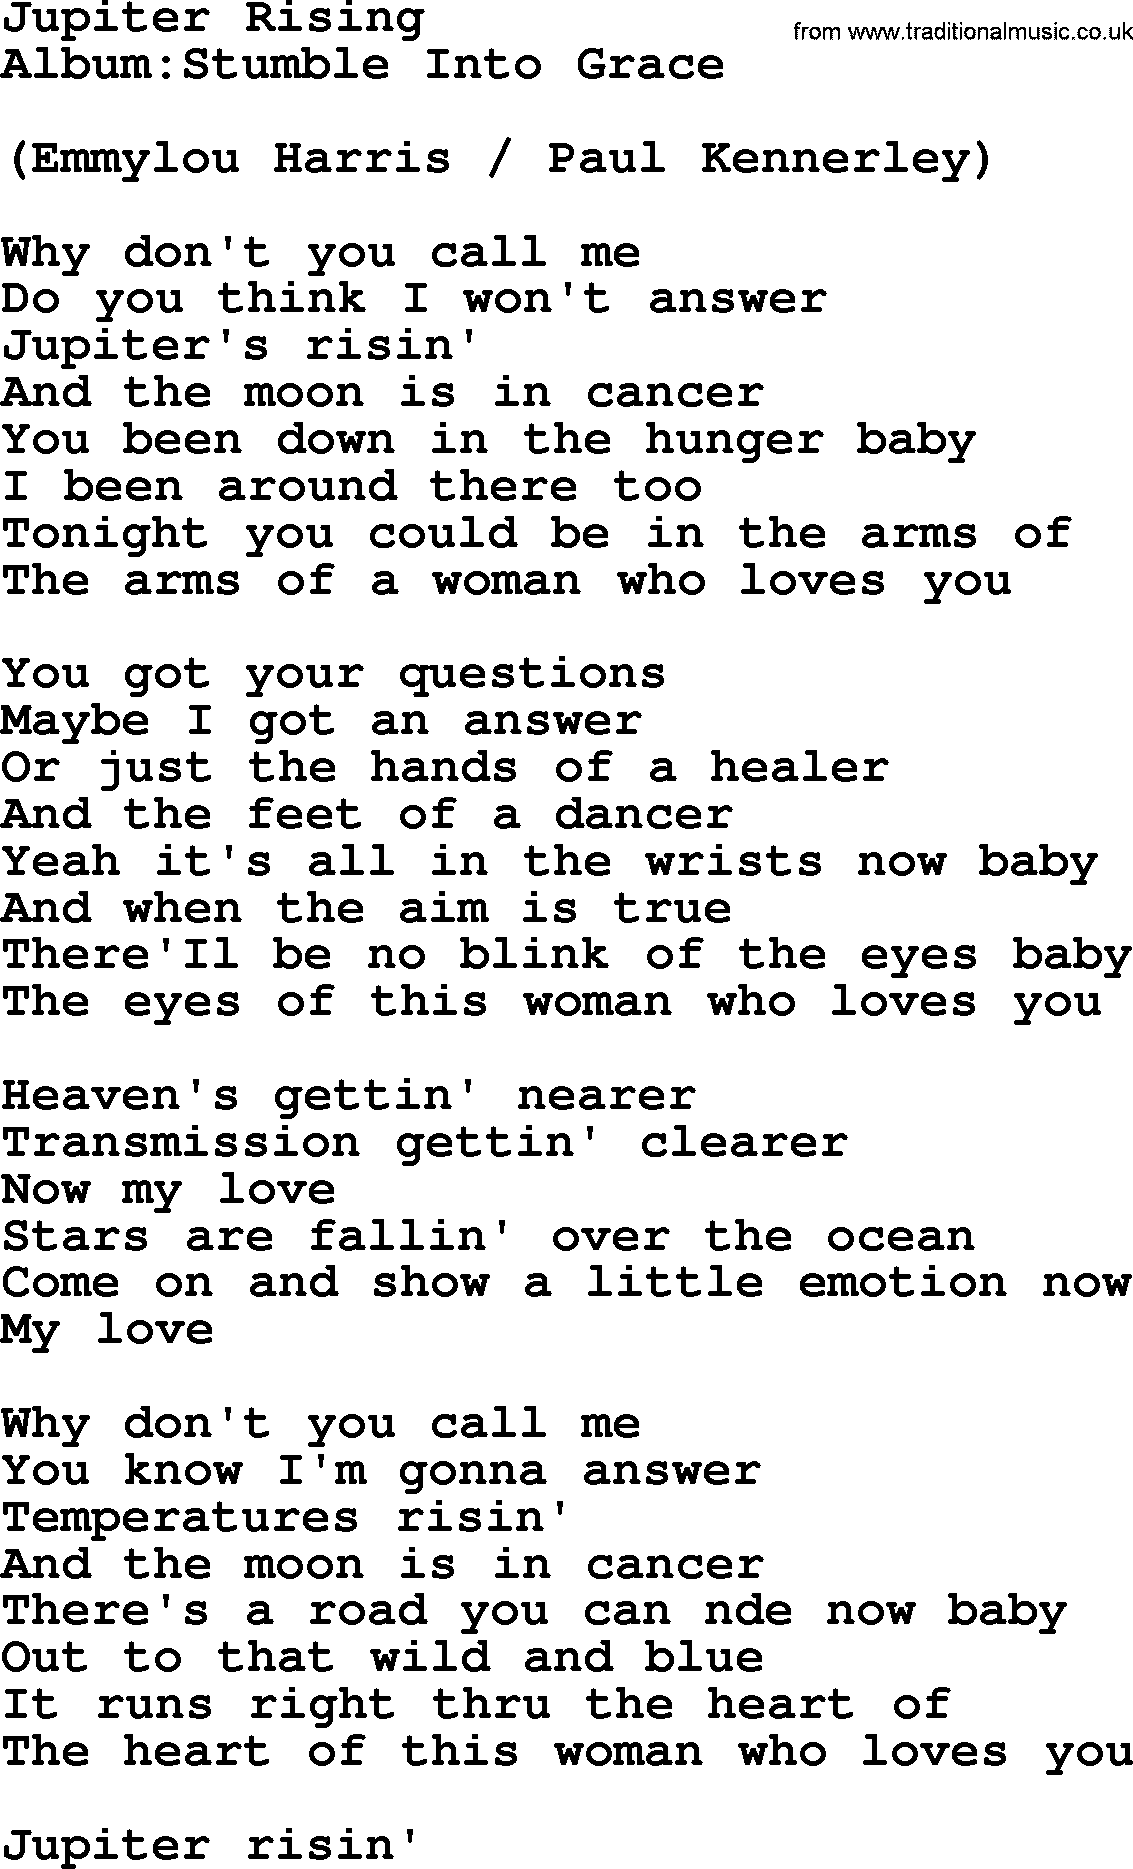 Emmylou Harris song: Jupiter Rising lyrics